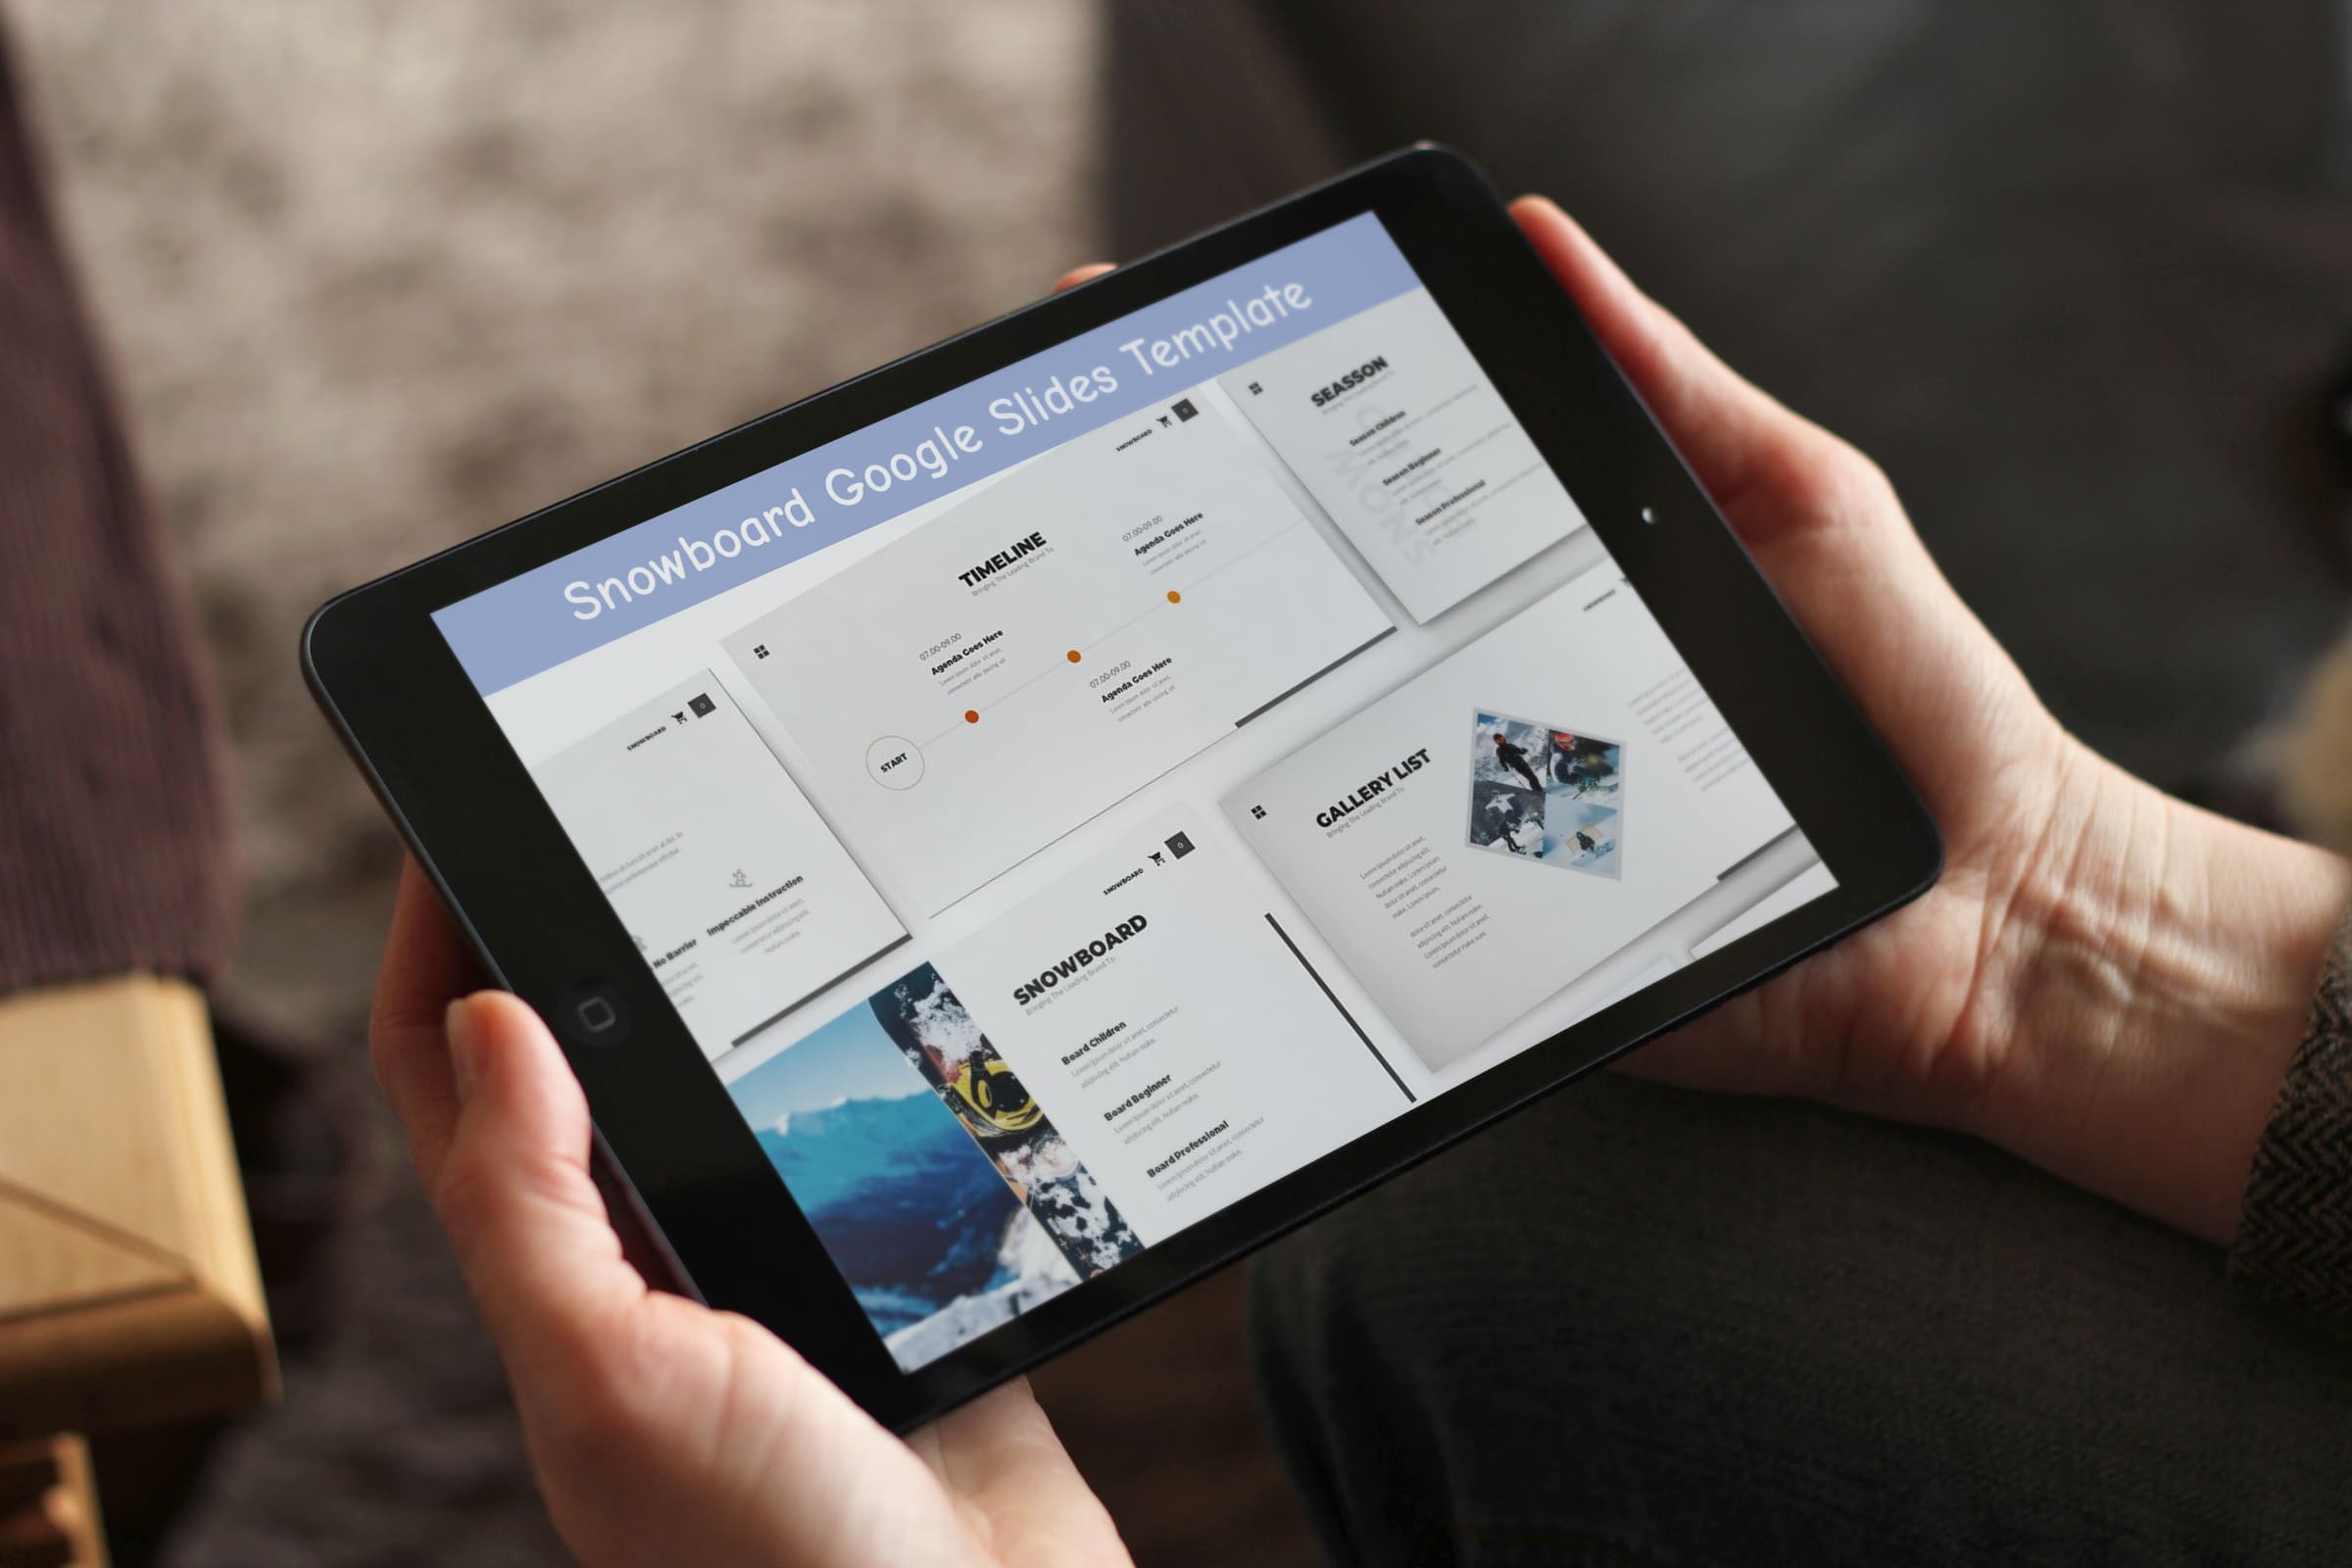 Snowboard Google Slides Template - Mockup on Tablet.